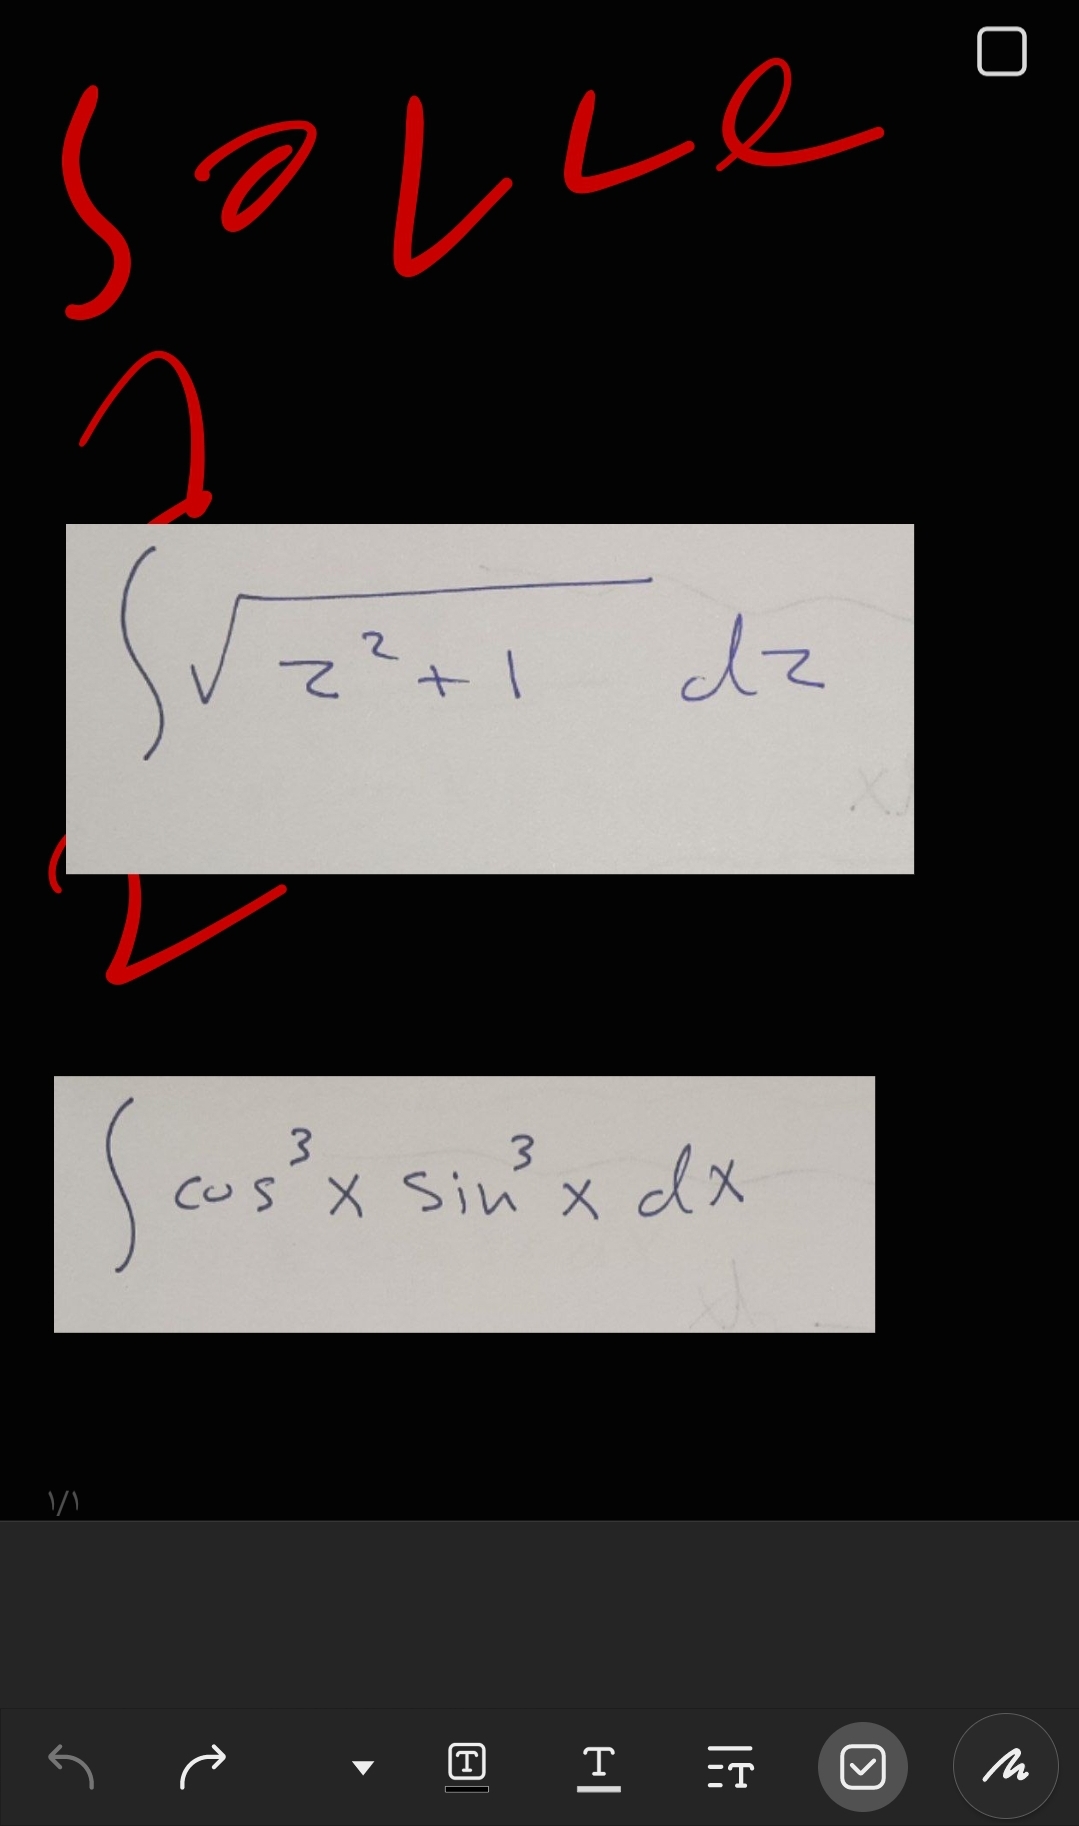 solle
не
۱/۱
2
z² + 1
²+1
dz
3
3
cus x sin³ x dx
で
T=T
[く]
M